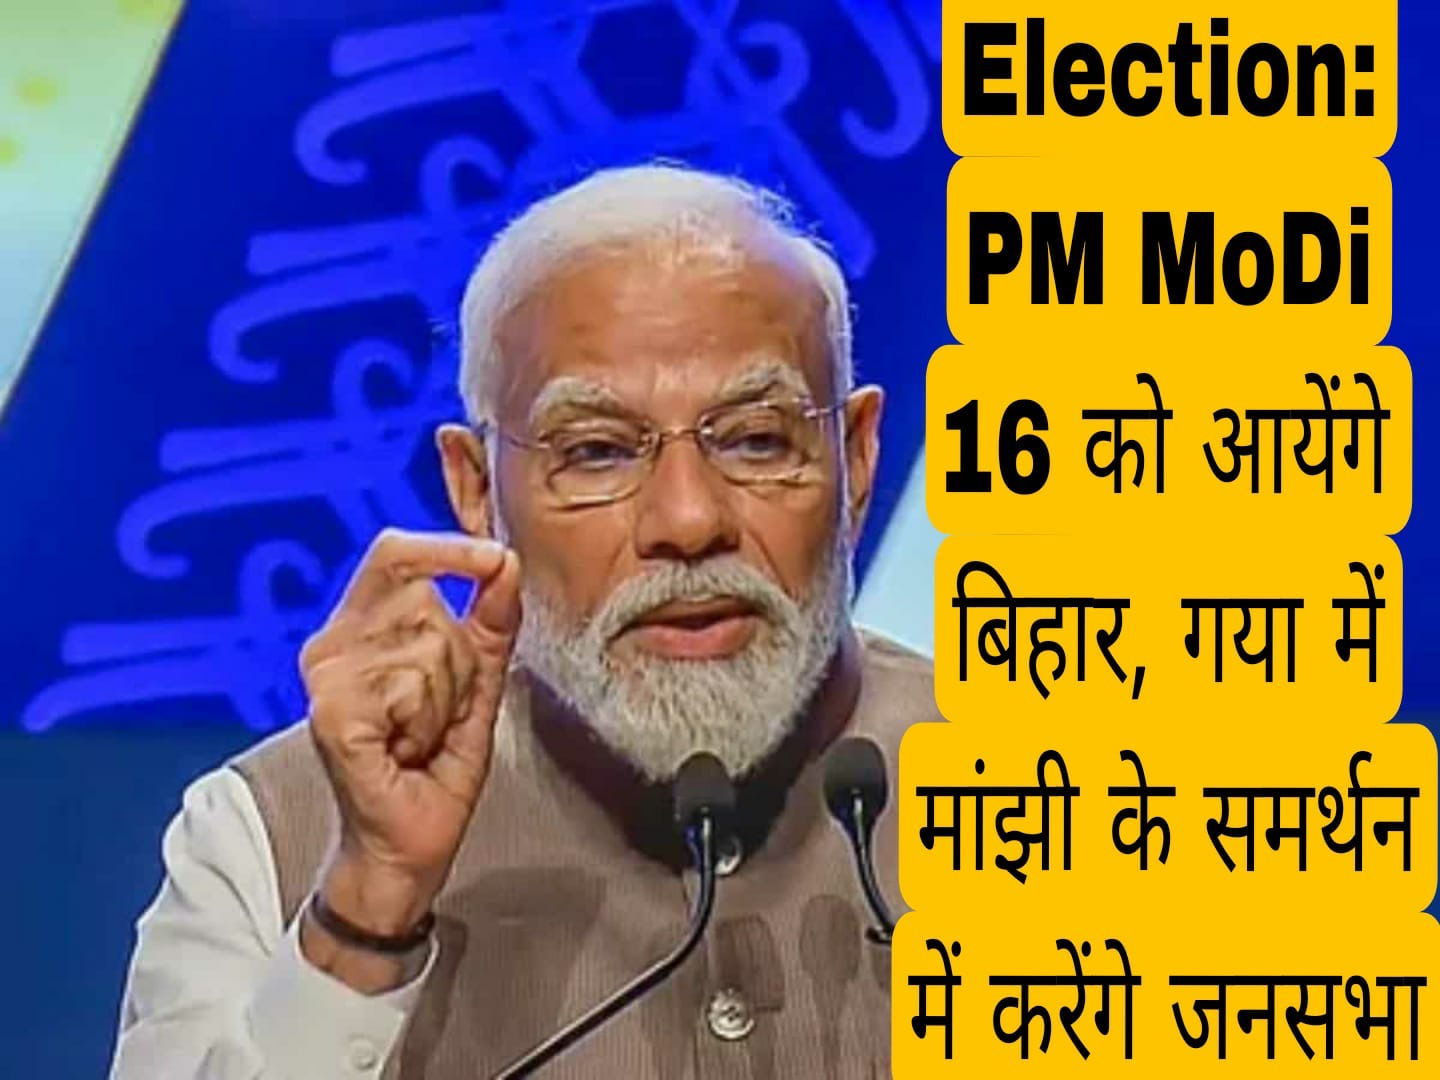 Election: प्रधानमंत्री नरेन्द्र मोदी 16 को आयेंगे बिहार, गया में मांझी के समर्थन में करेंगे जनसभा को सम्बोधित